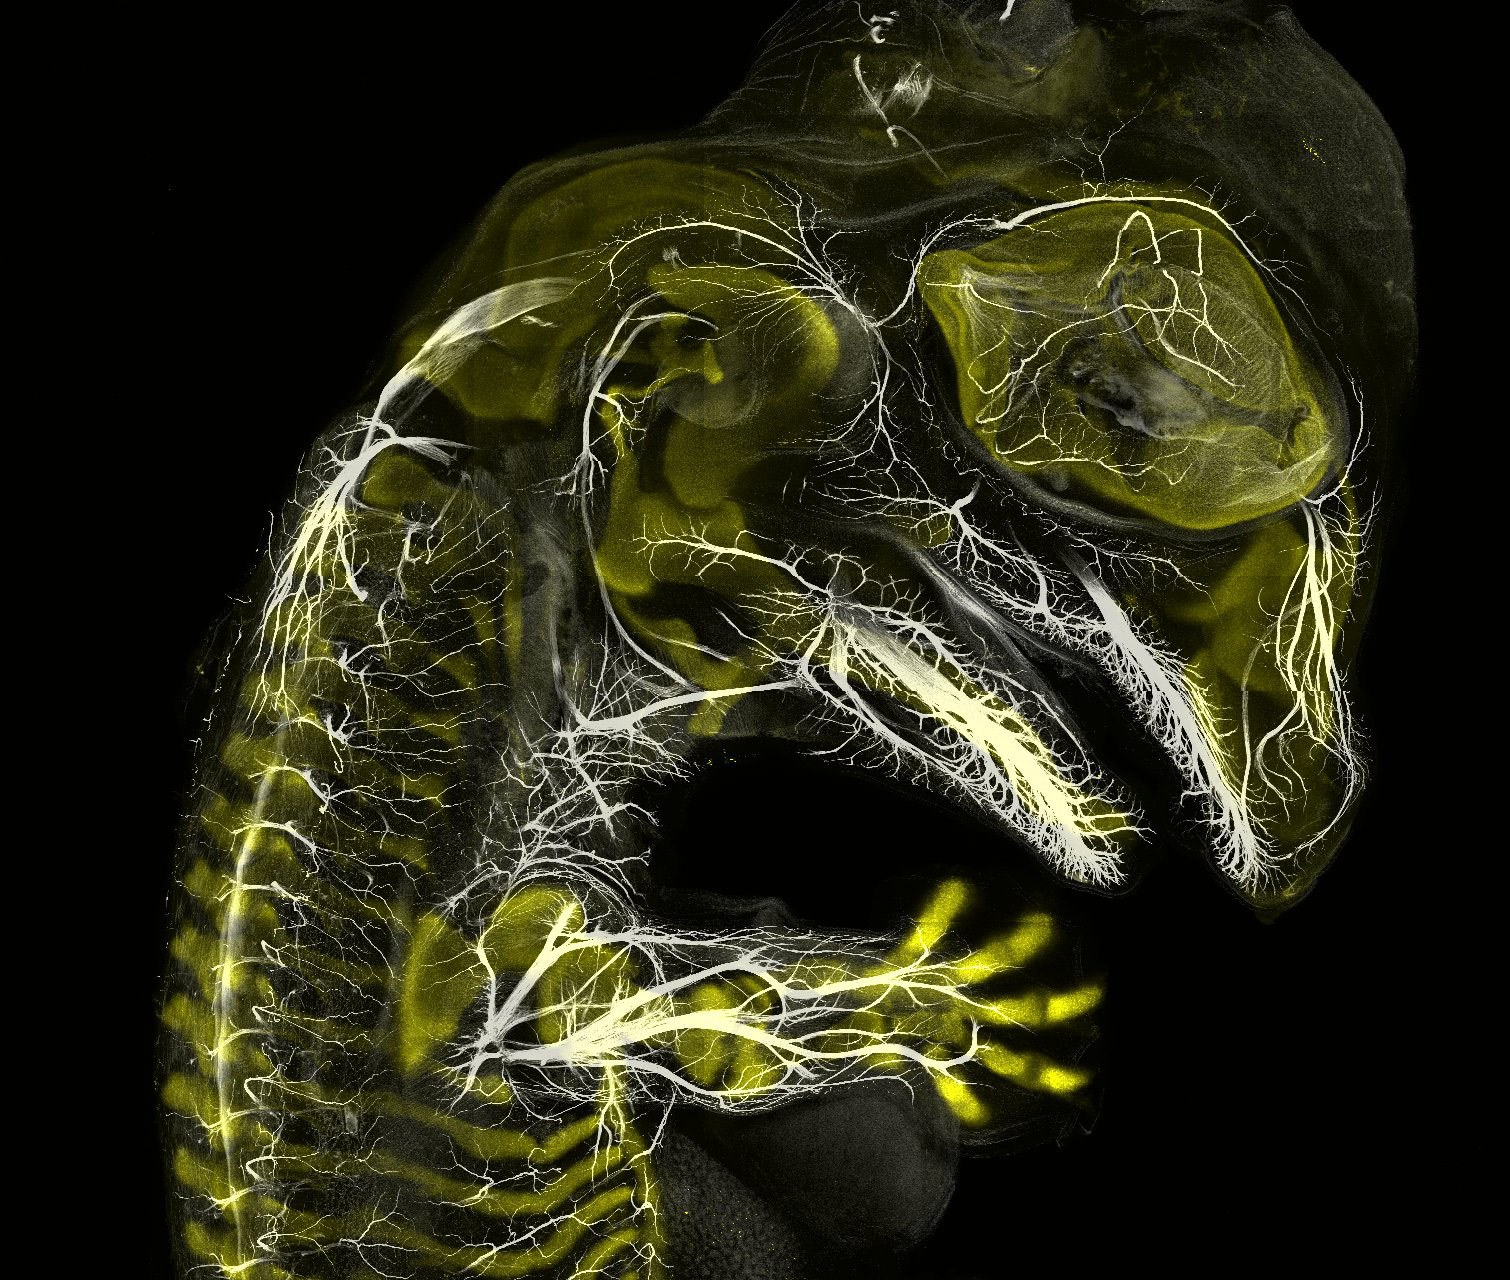 3-alligator-embryo-stage-13-nerves-and-cartilage